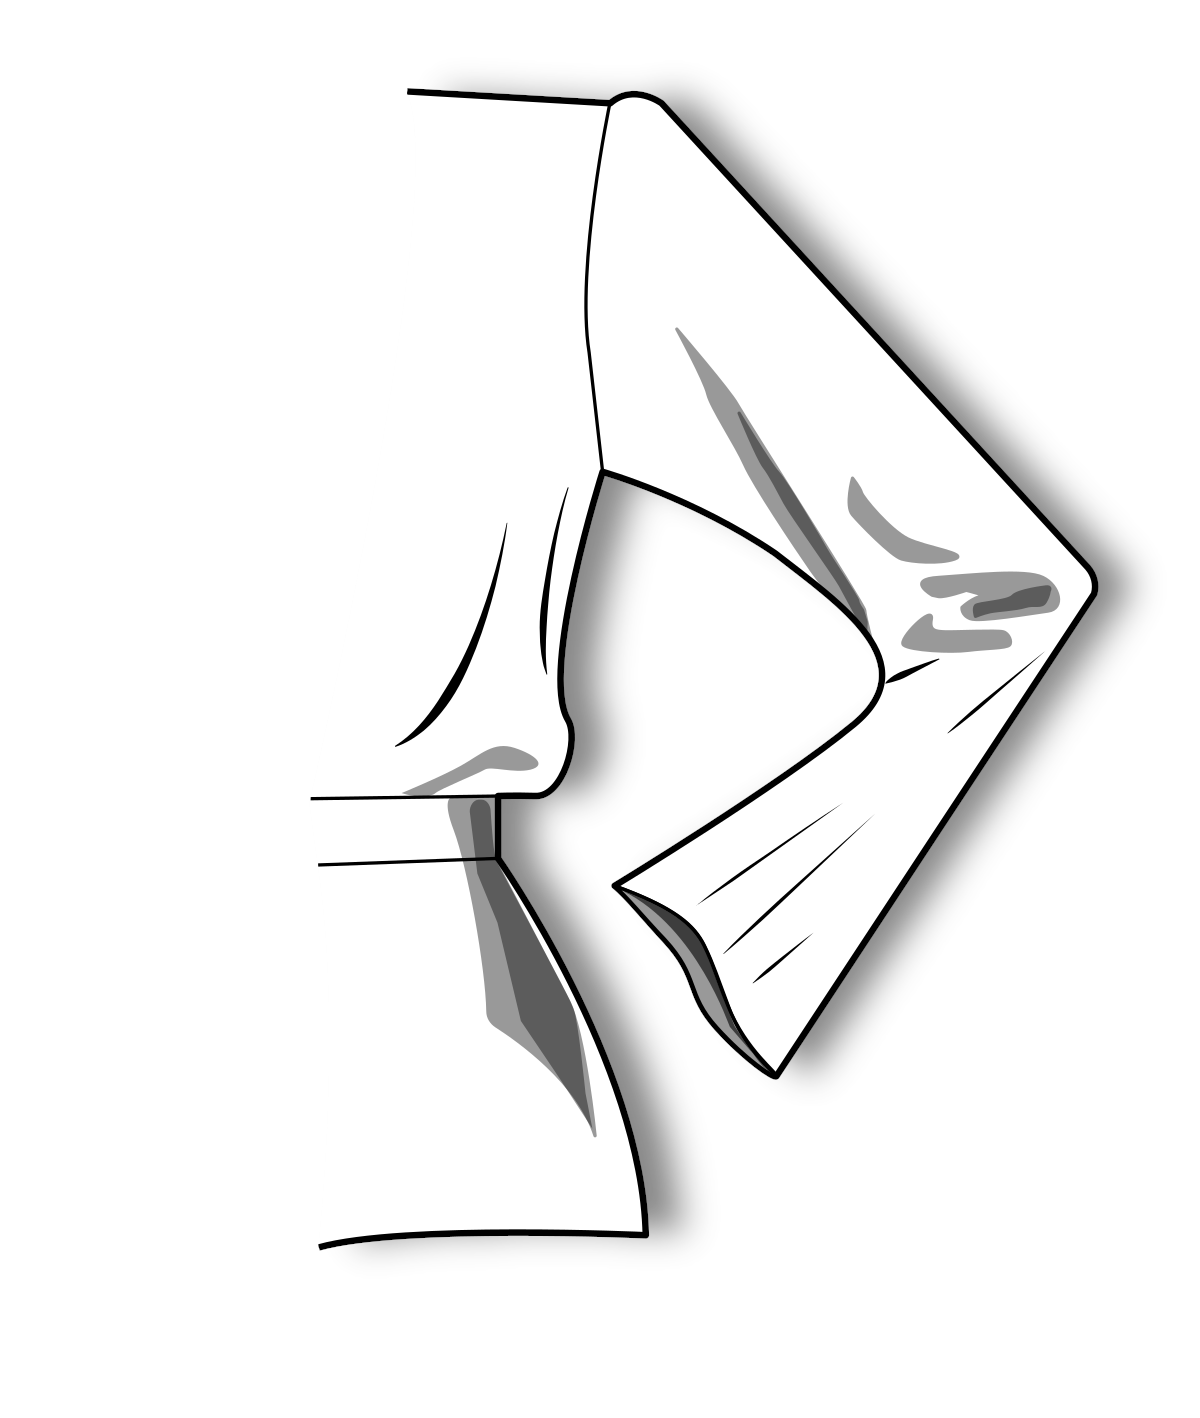 Набір рукавів до базової основи сукні напівприлягаючого силуету за методикою «М. Мюллер та син» (російська мова)